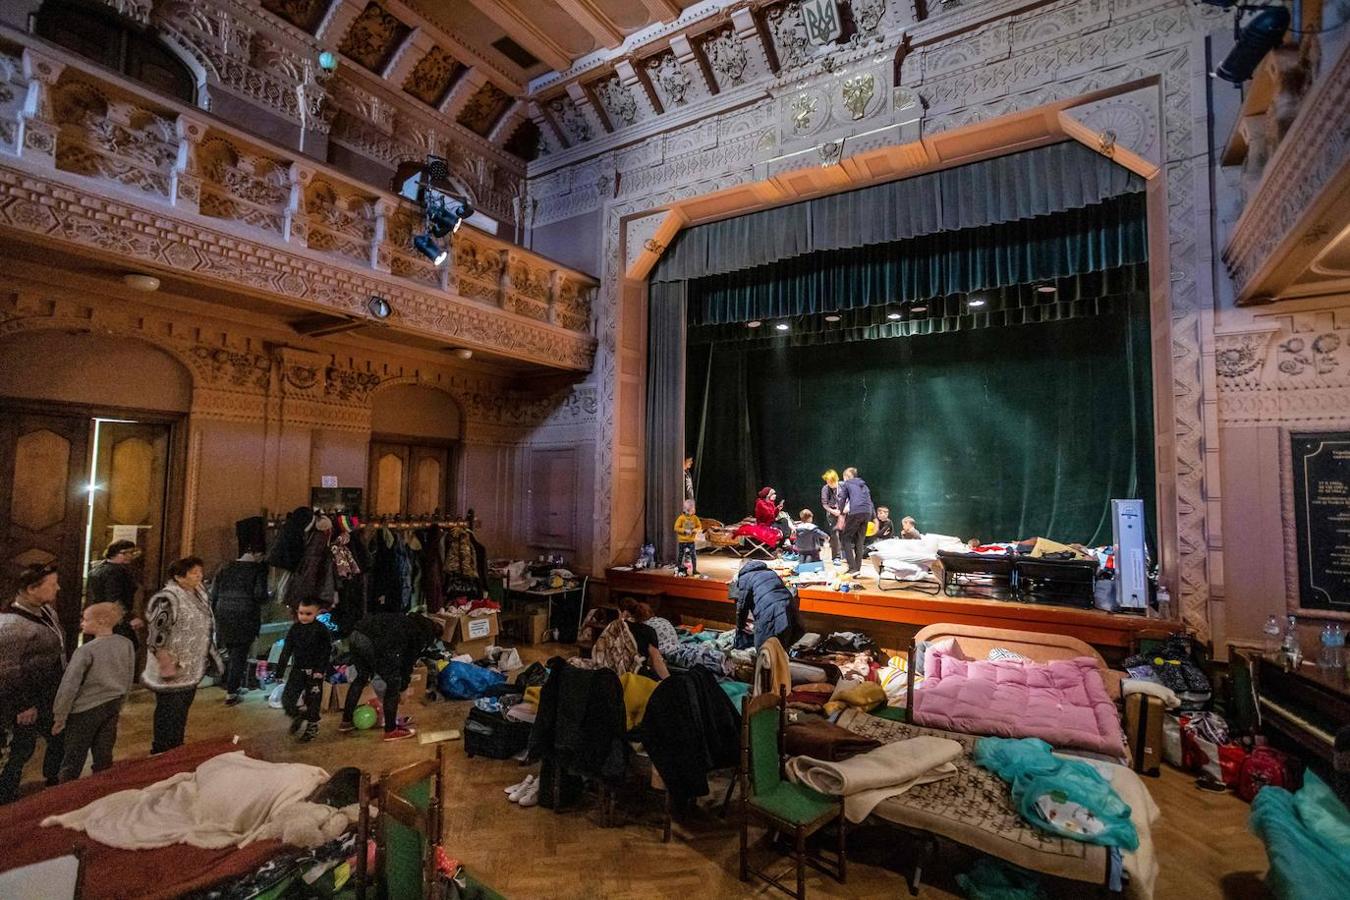 Nueva vida en Polonia. Un teatro de la localidad polaca de Przemysl, cerca de la frontera, acoge a refugiados ucranianos que huyen de los bombardeos en su país